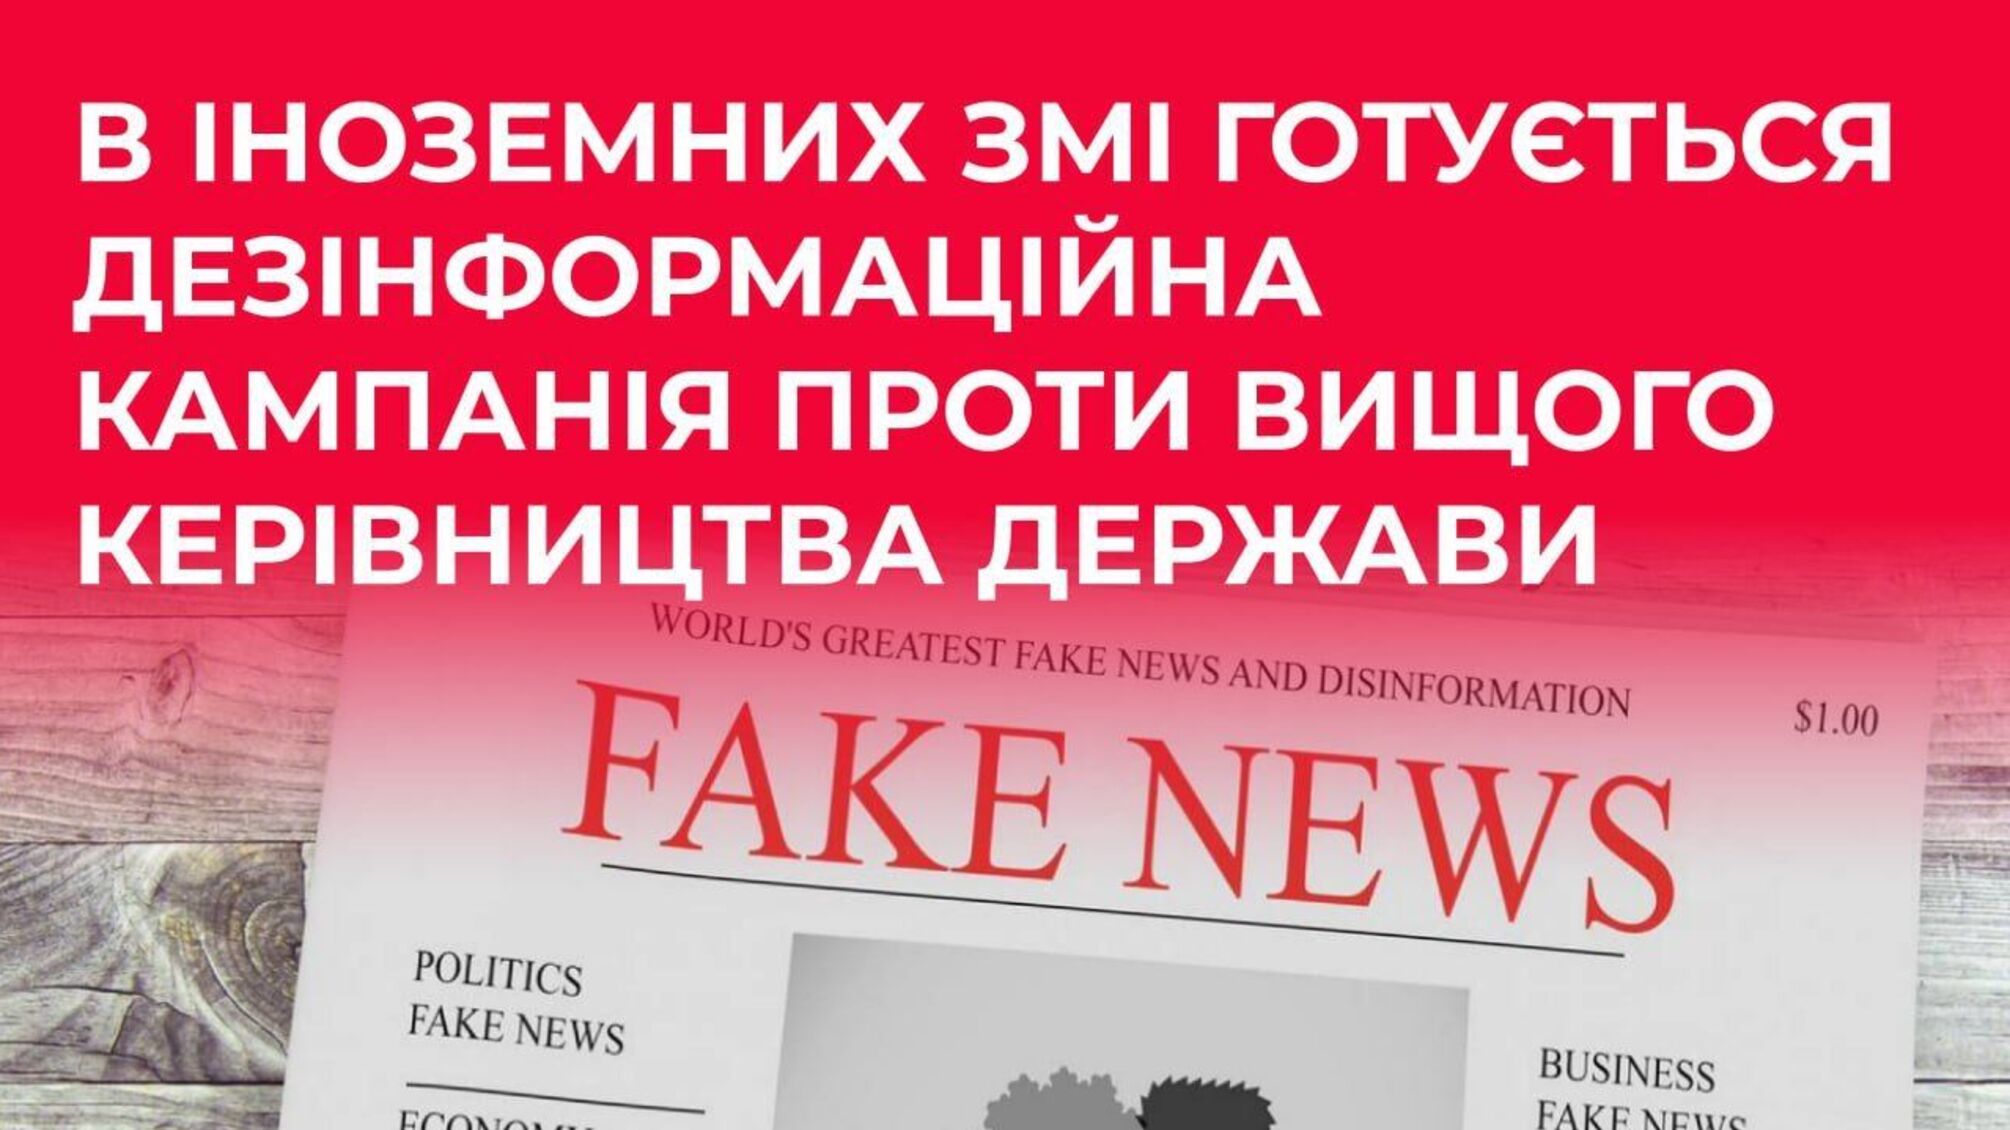 В иностранных СМИ планируют дезинформационную кампанию против высшего руководства Украины